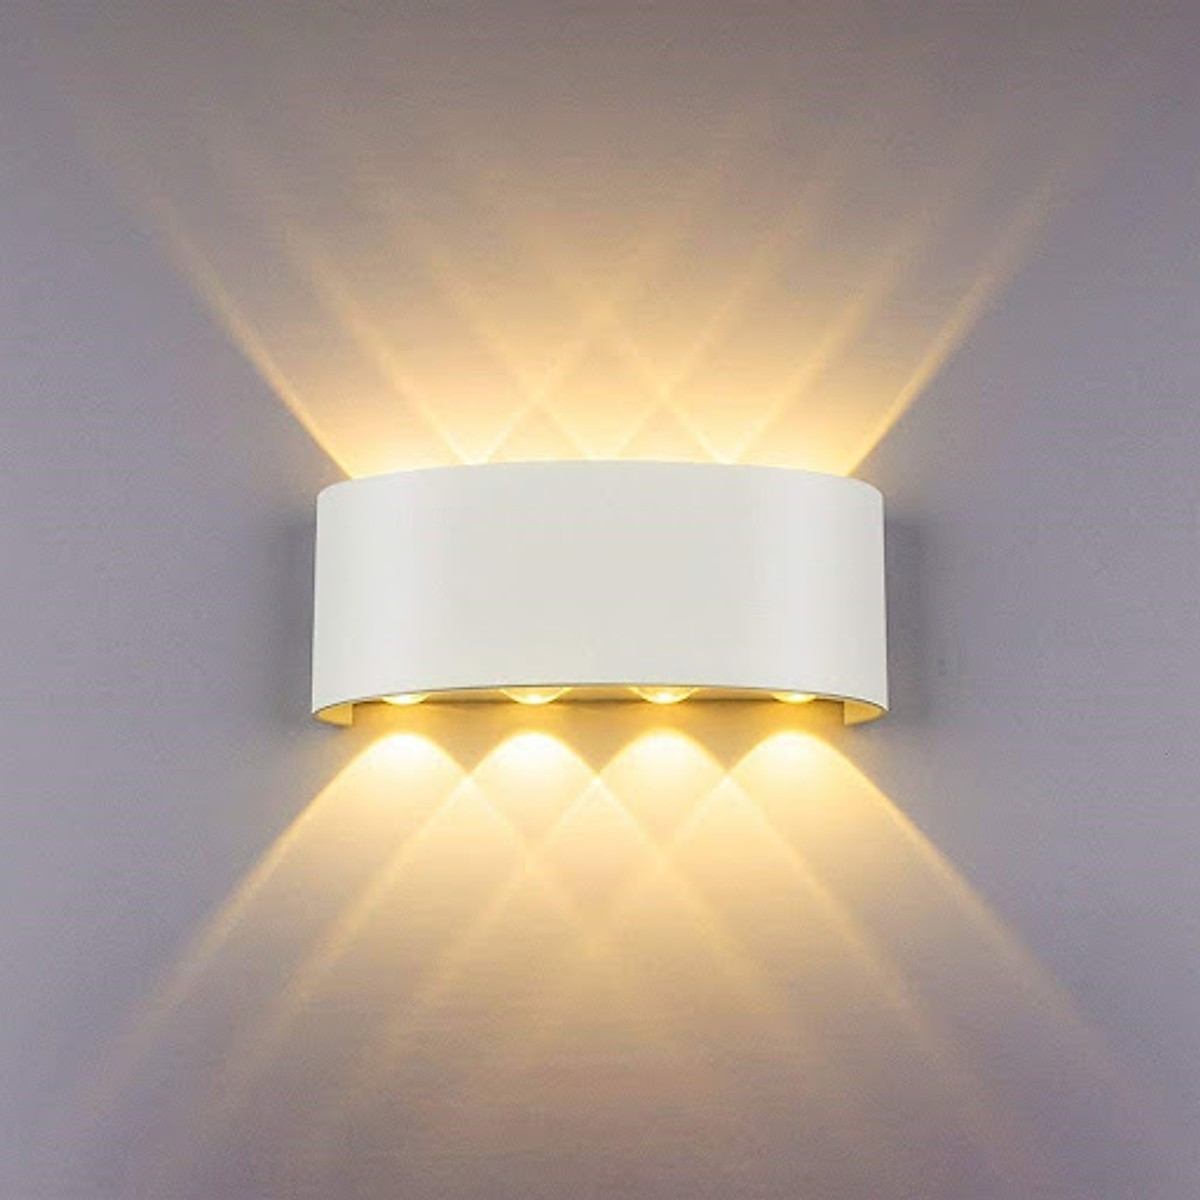 Sử dụng đèn led gắn tường cho bên trong hoặc bên ngoài quán cafe